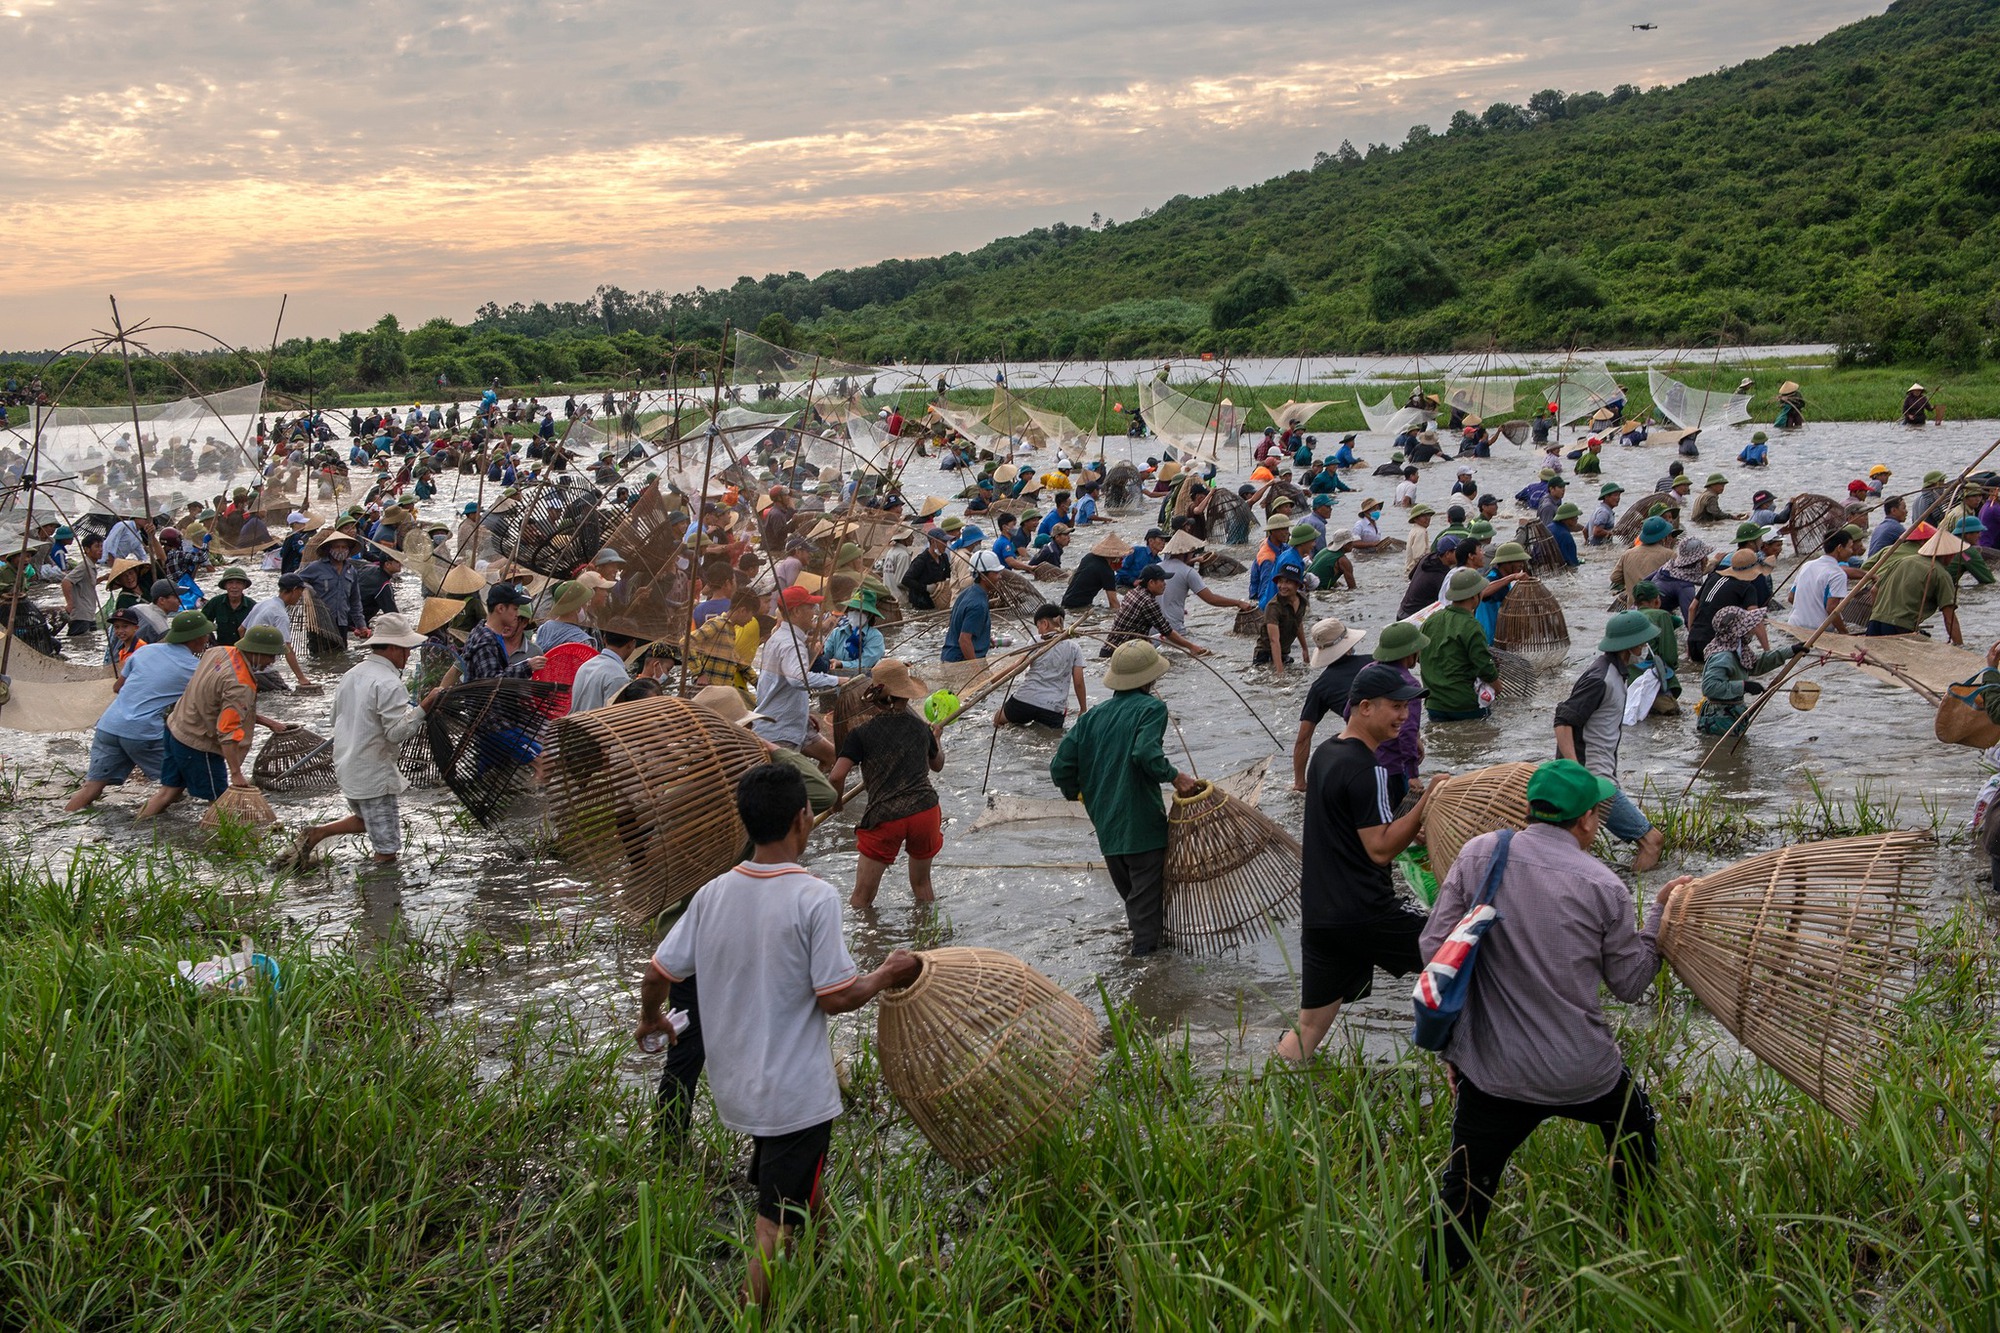 Độc đáo với Lễ hội đánh bắt loài này trên sông Vực Rào, Hà Tĩnh - Ảnh 3.